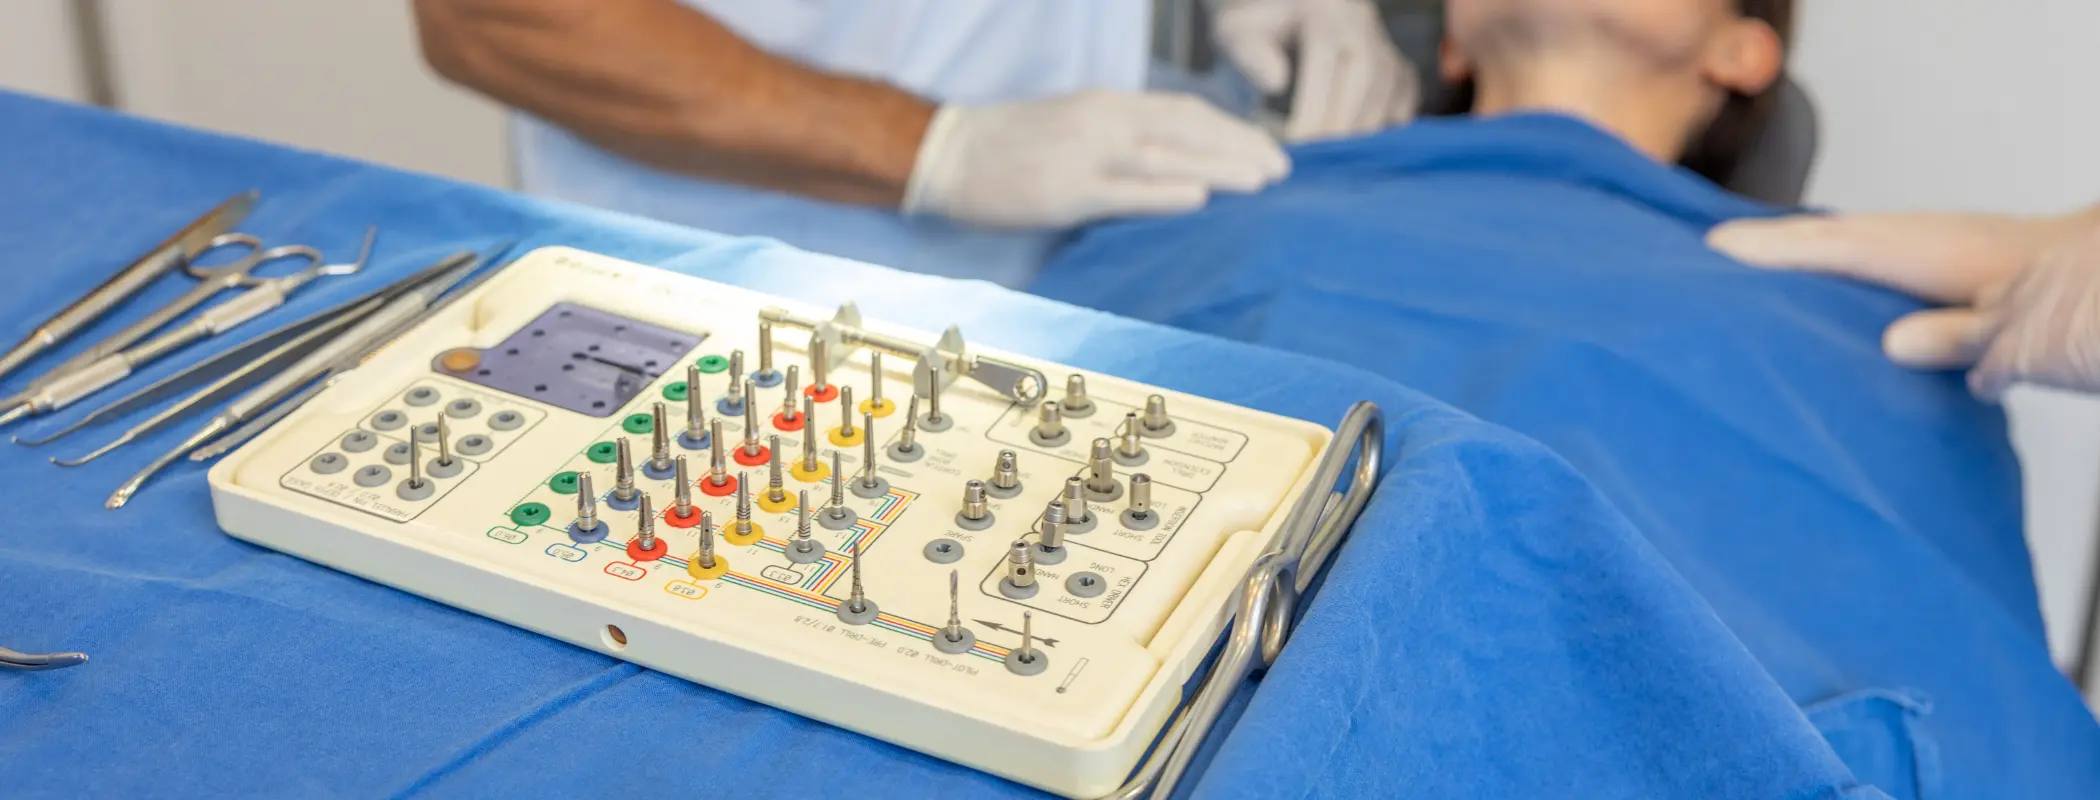 Operationswerkzeug mit Patienten im Hintergrund | Gemeinschaftspraxis Dr. Dr. Jürgen Wahn - Dr. Dr. Tassilo Illg